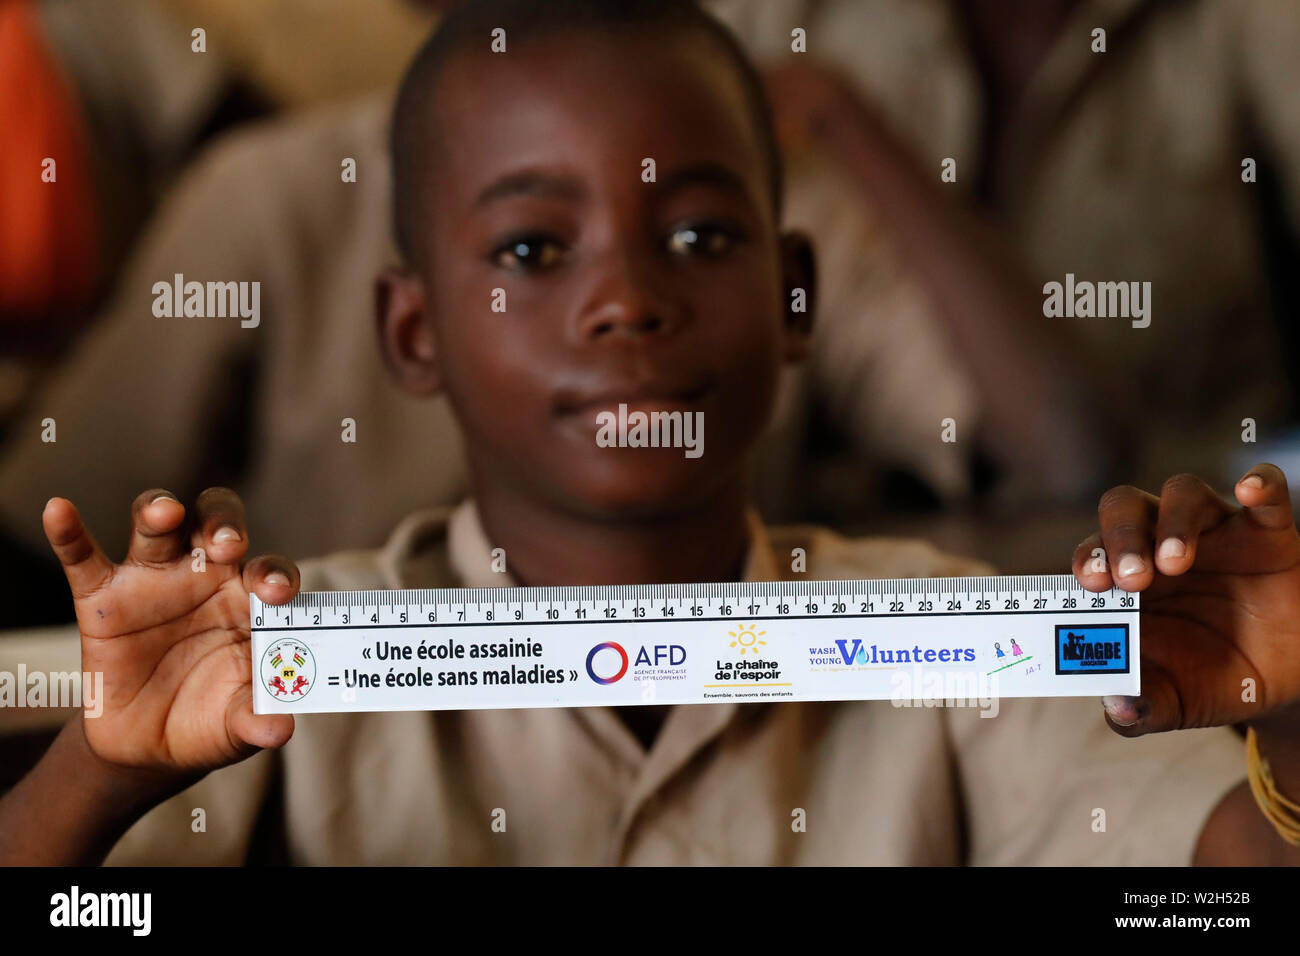 L'école primaire de l'Afrique. Enfant parrainé par l'ONG française : la chaîne de l'Espoir. La chaîne de l'espoir ( ). Lome. Le Togo. Banque D'Images